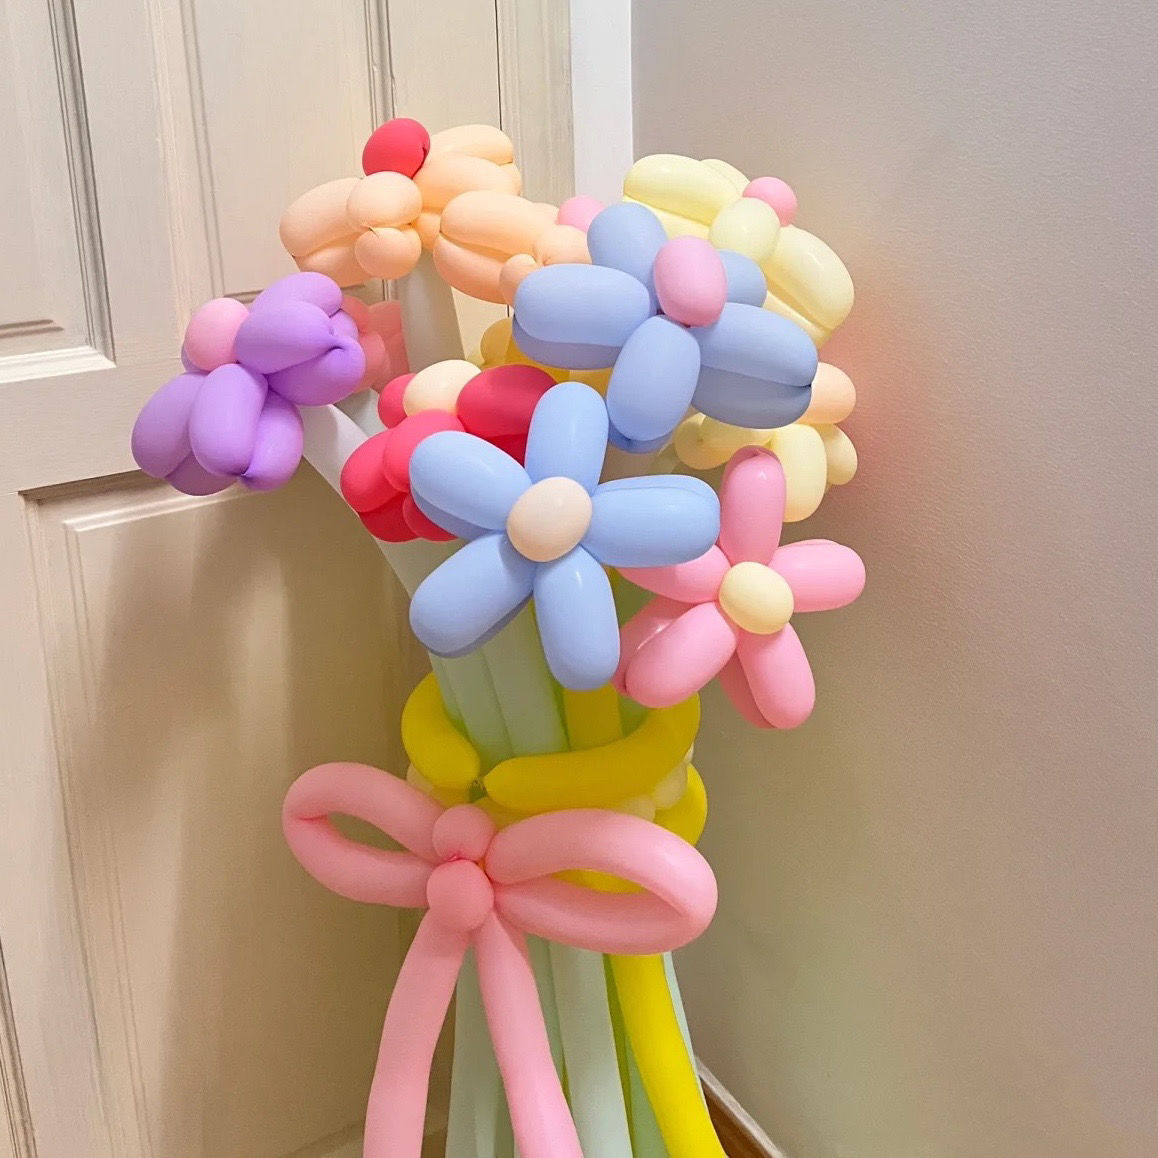 100支加厚小太子260魔术气球长条造型儿童卡通玩具单色装饰布置